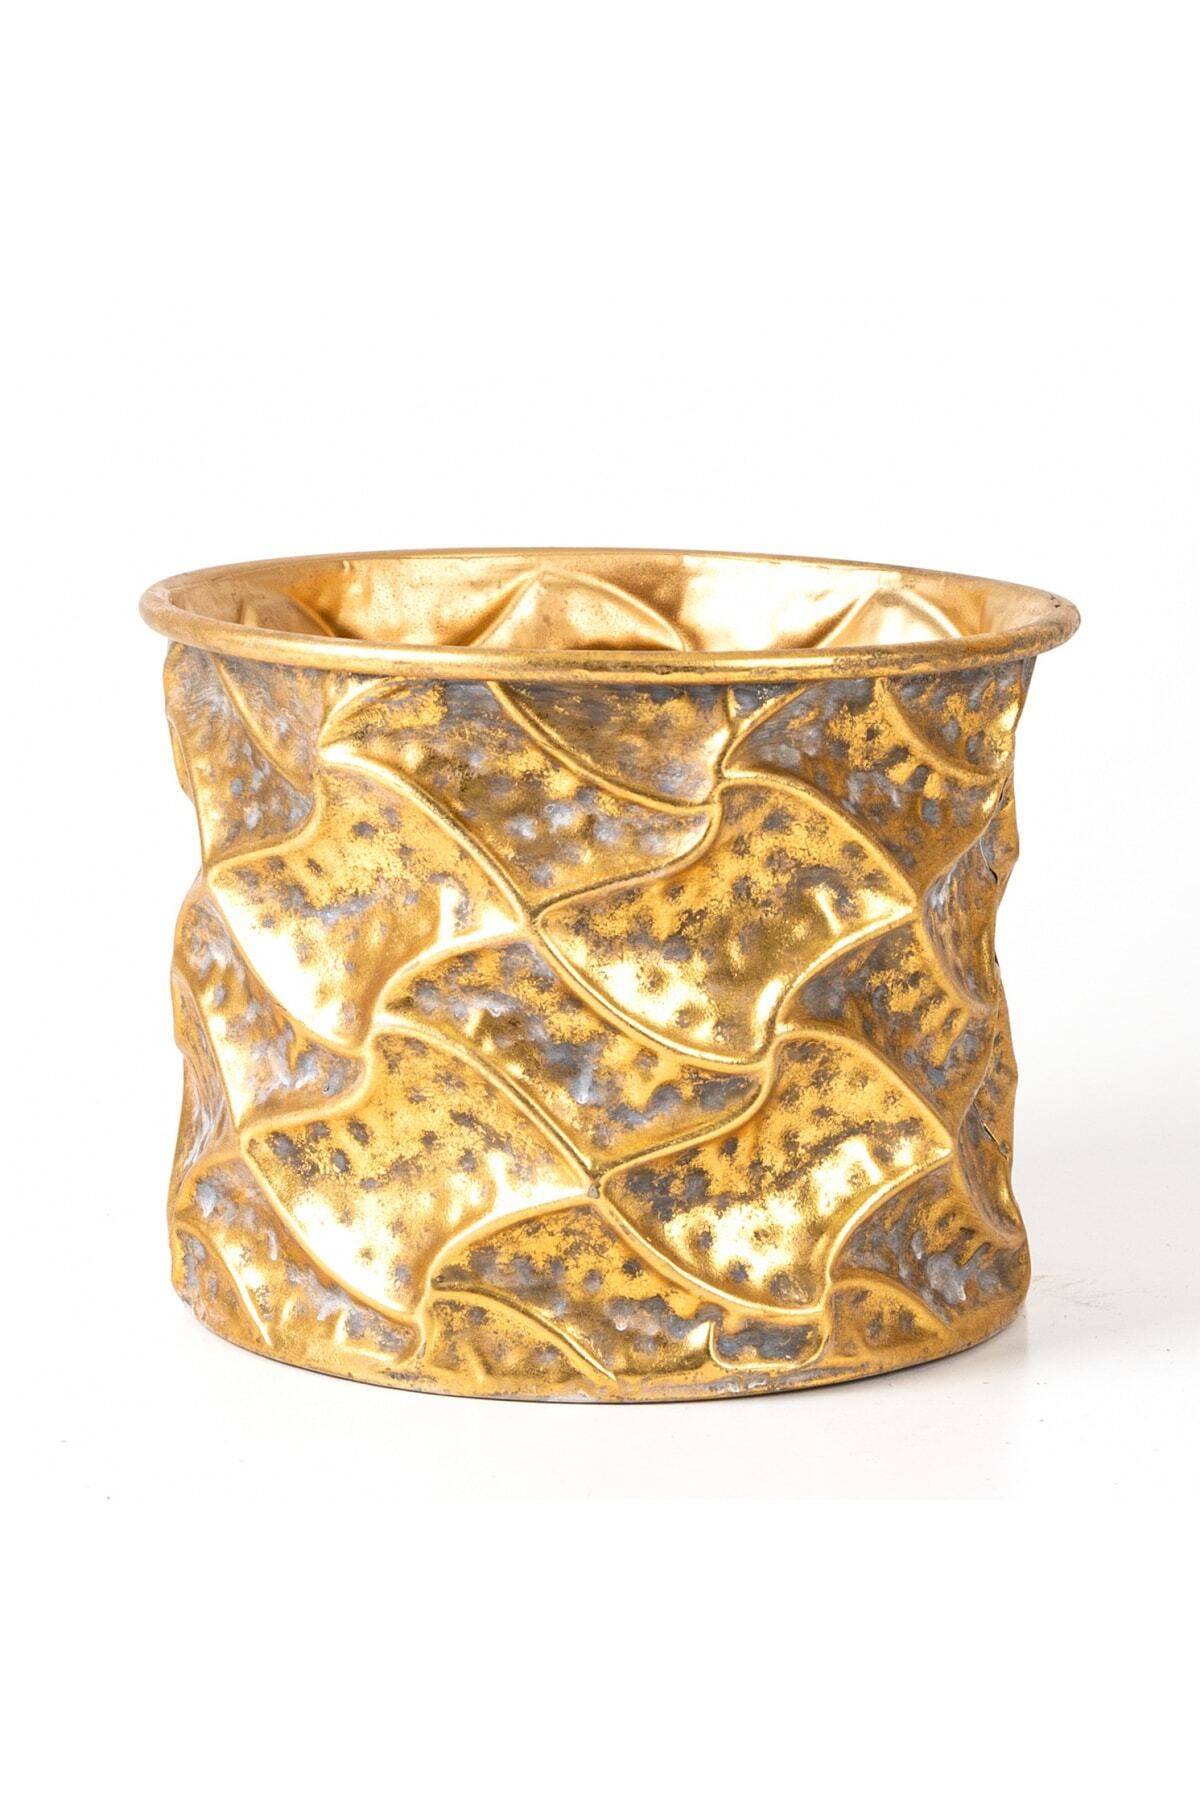 Herdekora Kabartma Desenli Metal Çiçeklik Saksı Altın Eskitme 25,5x19,5x25,5 Cm.